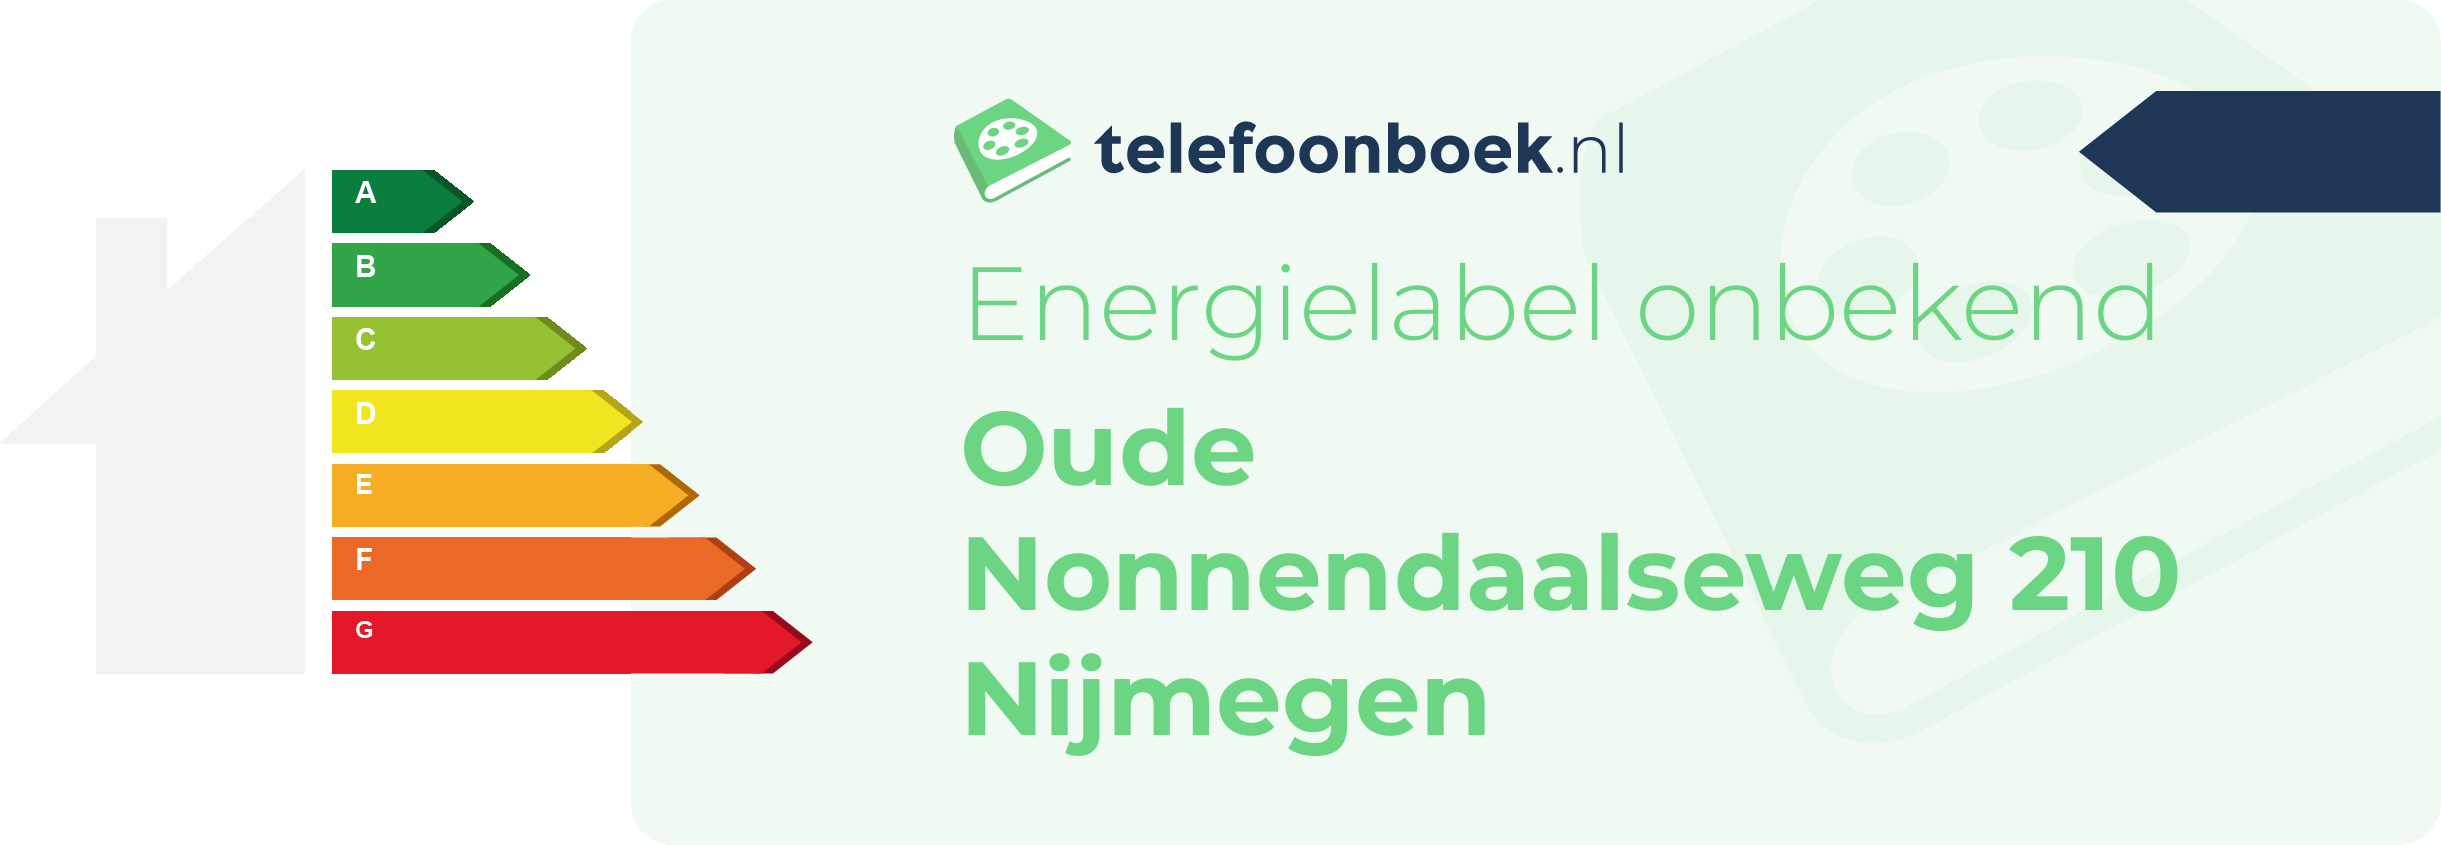 Energielabel Oude Nonnendaalseweg 210 Nijmegen